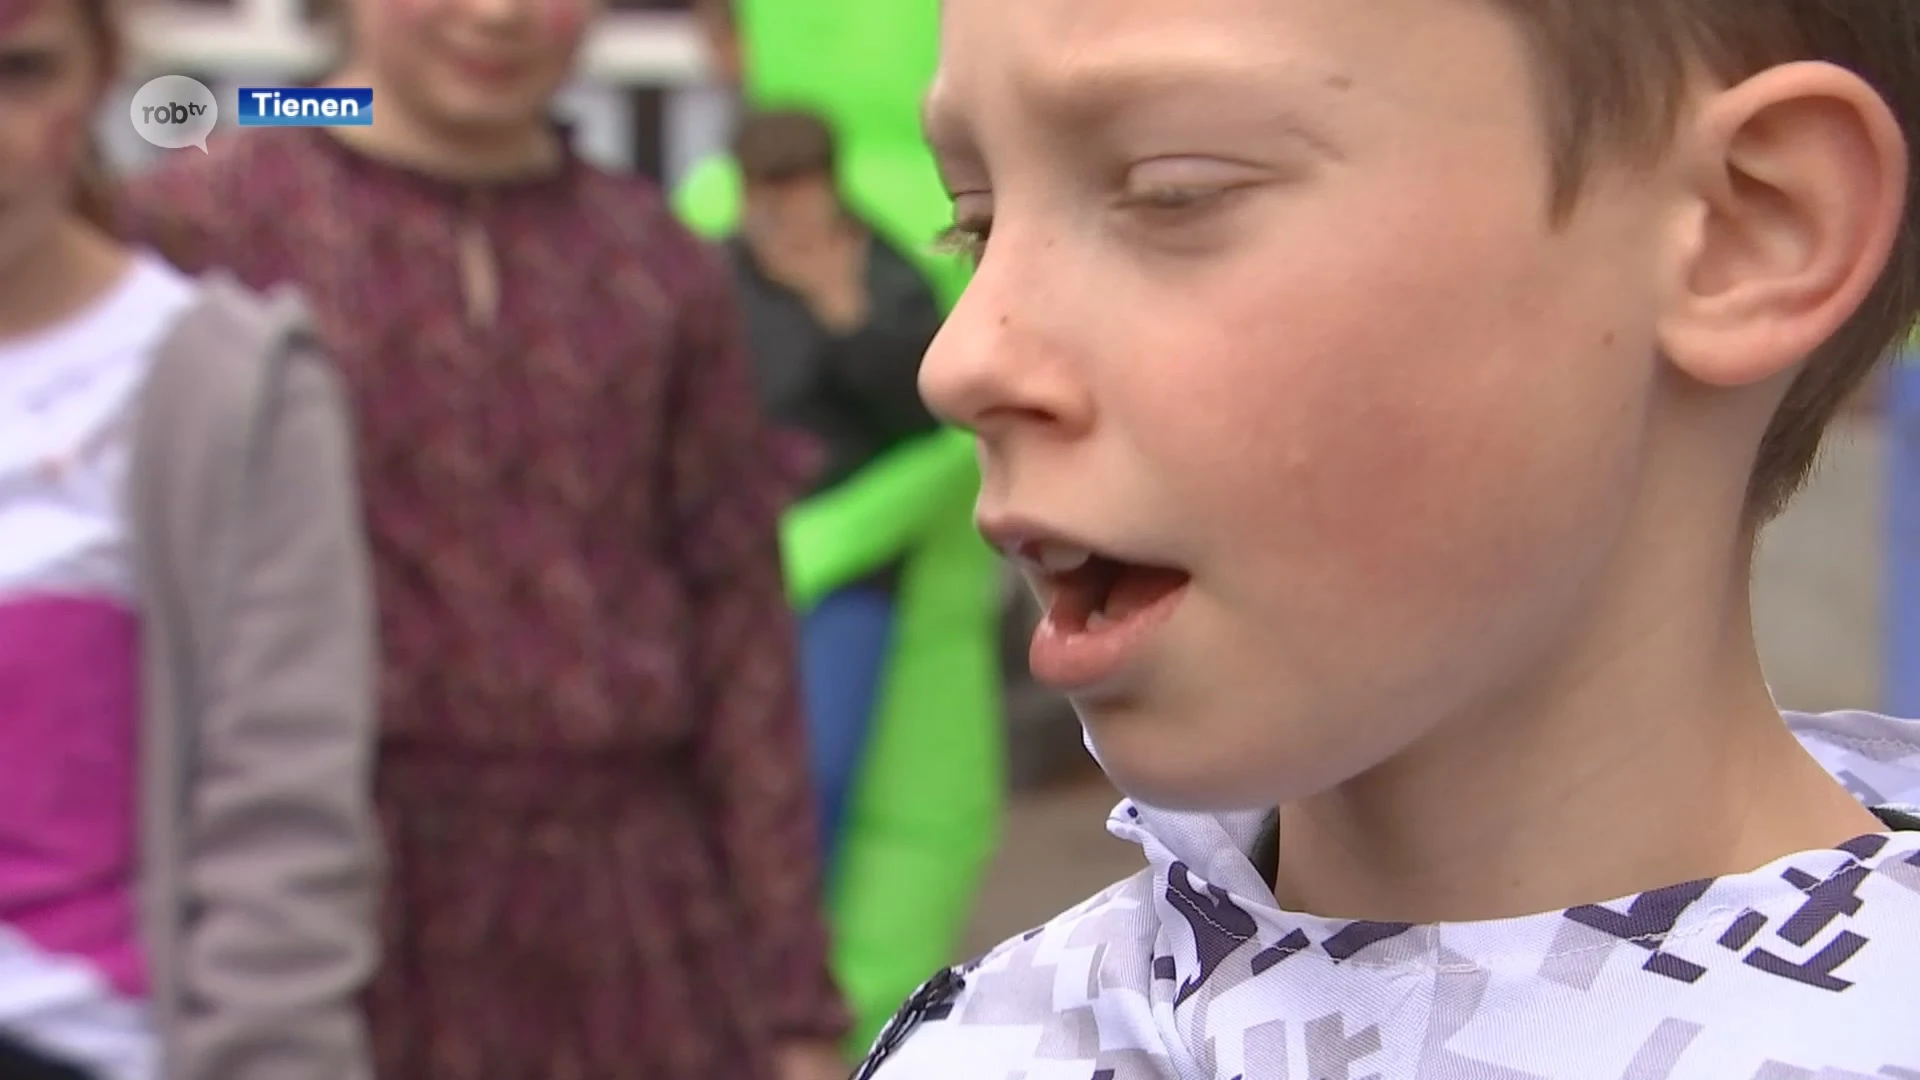 Carnaval wordt uitgebreid gevierd bij basisschool Stap voor Stap in Hakendover: "Mijn outfit is ook een beetje griezelig"